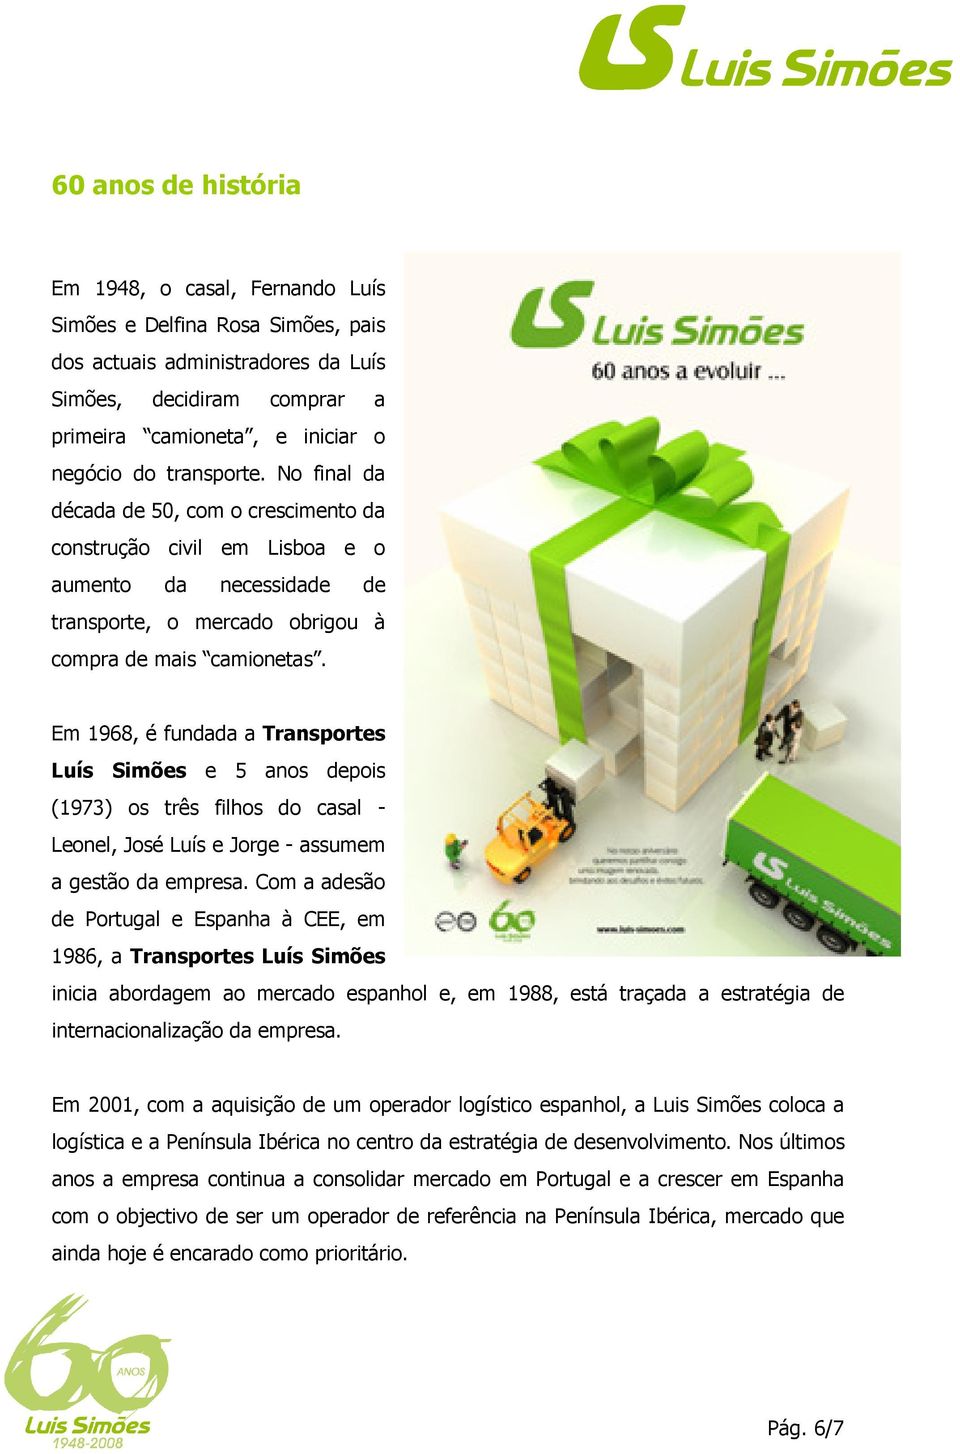 Em 1968, é fundada a Transportes Luís Simões e 5 anos depois (1973) os três filhos do casal - Leonel, José Luís e Jorge - assumem a gestão da empresa.